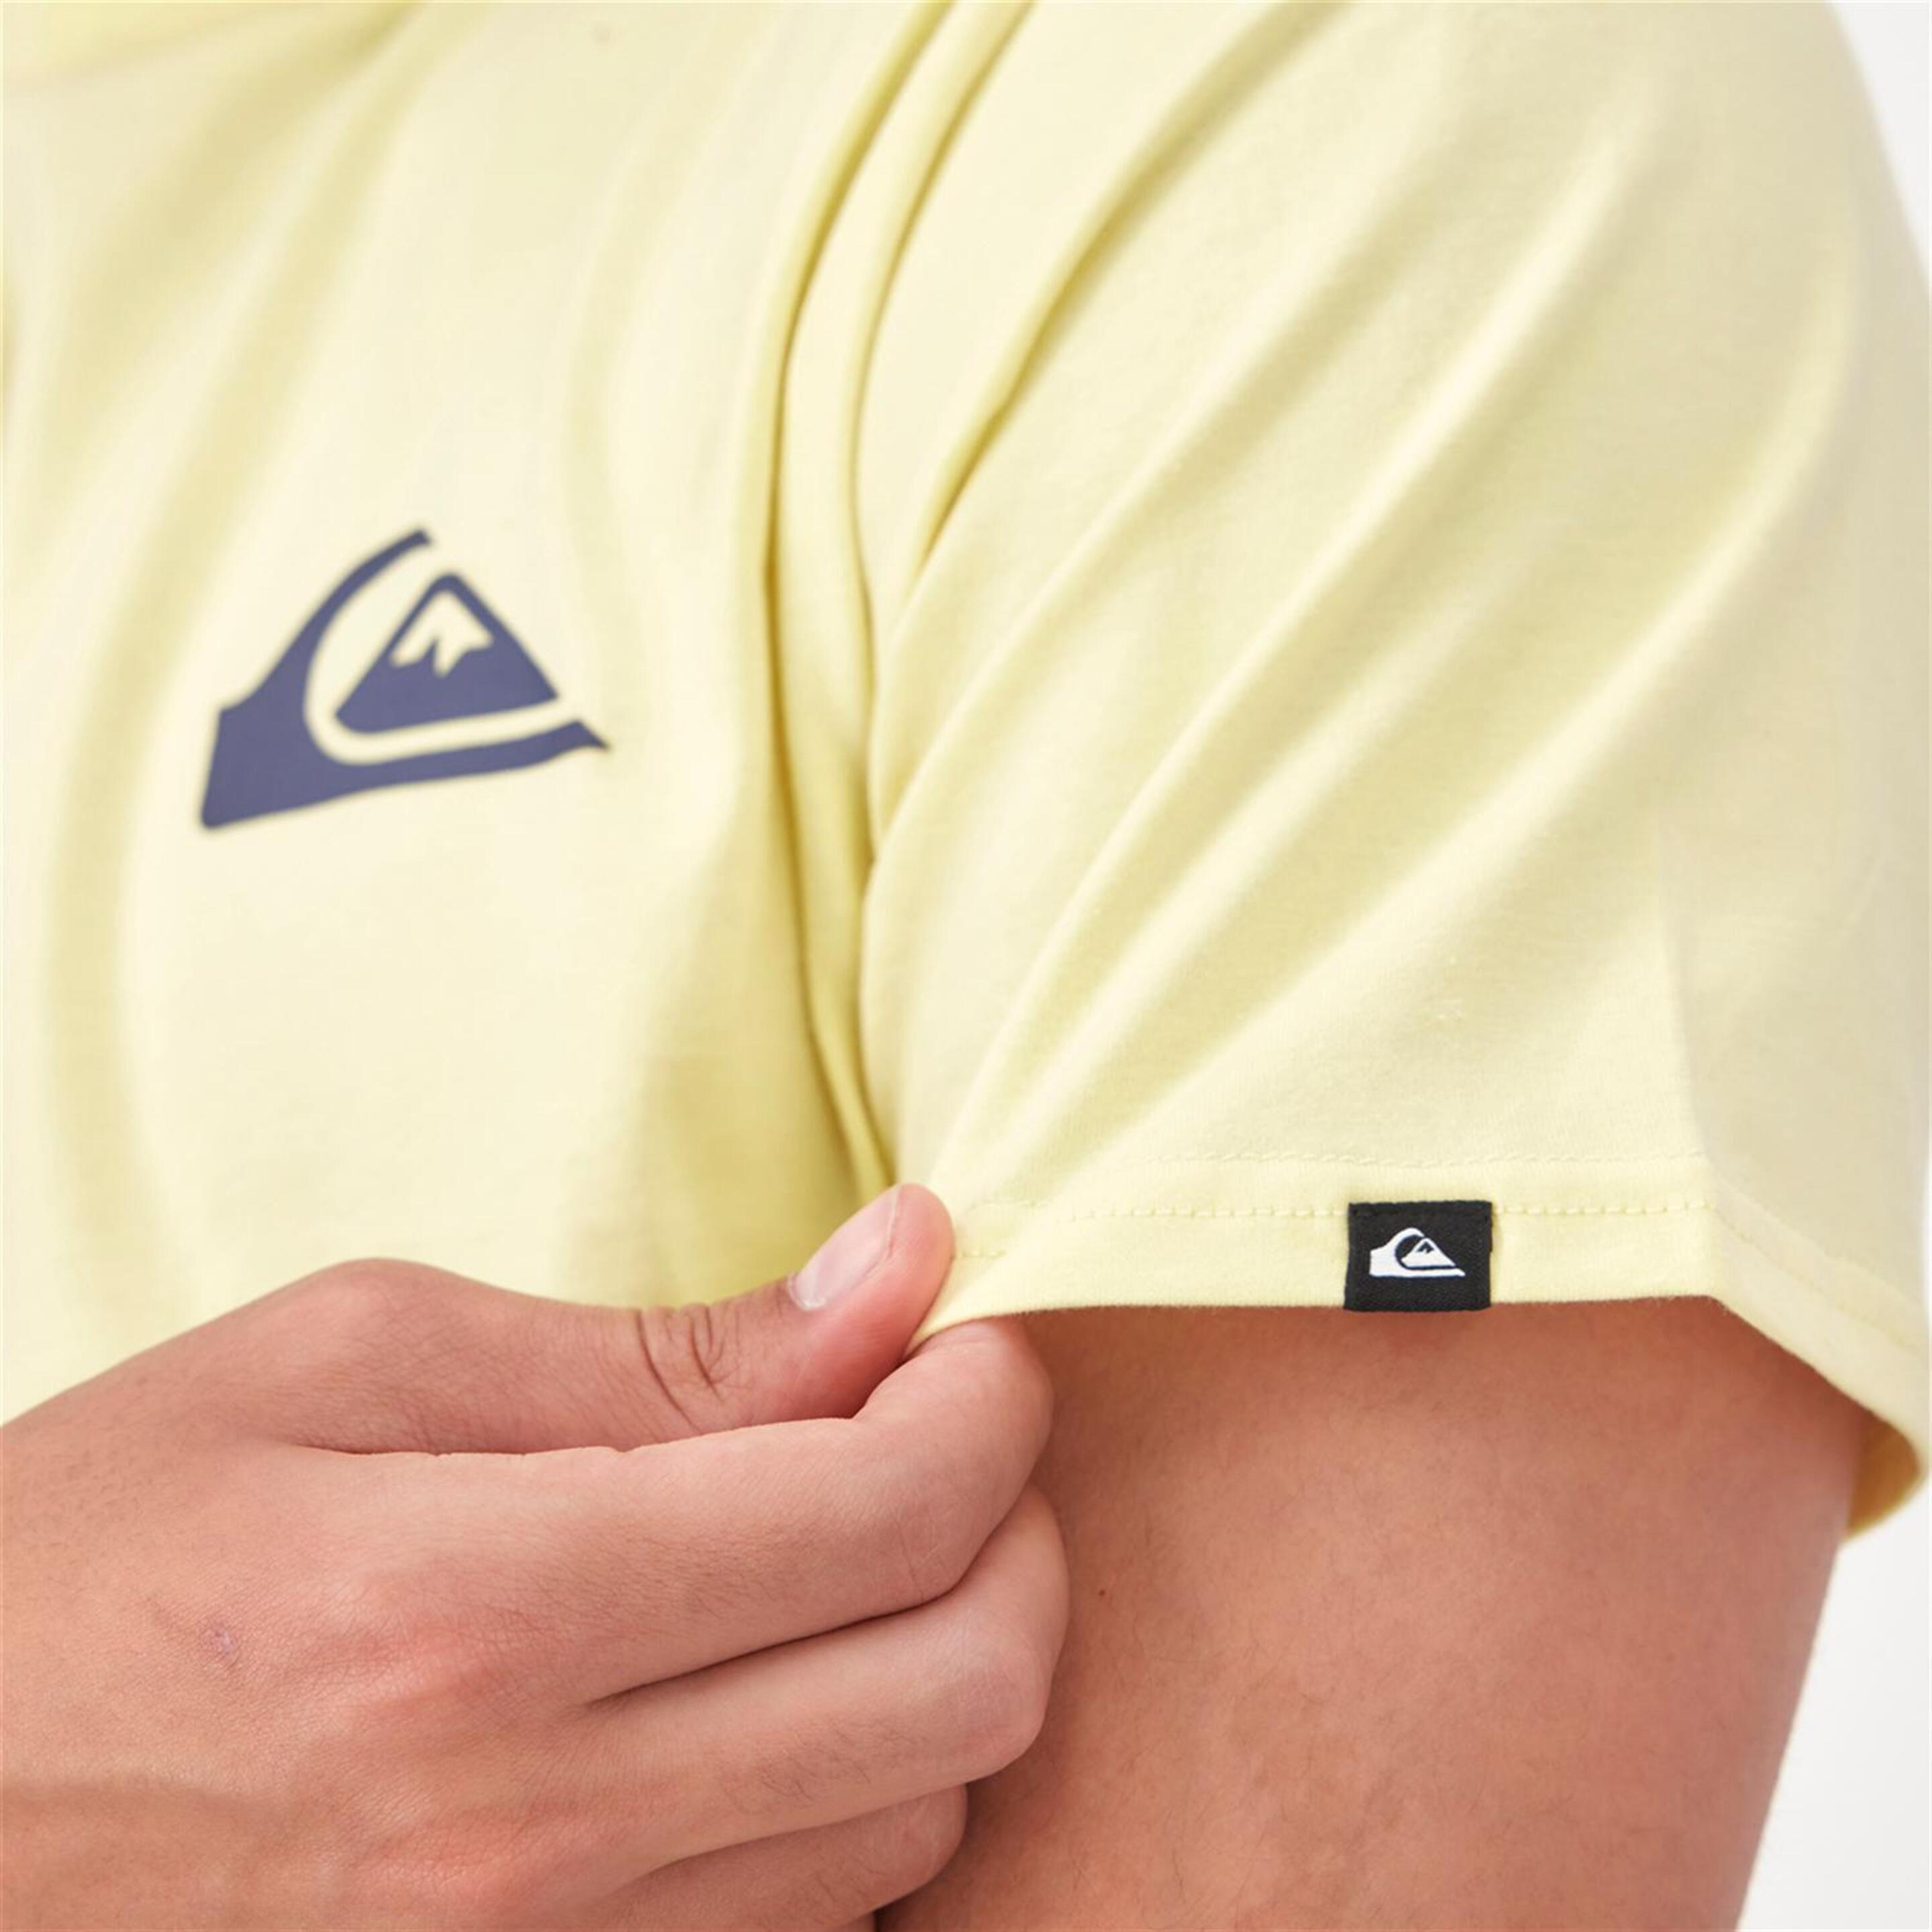 Camiseta Quiksilver - Amarillo - Camiseta Hombre